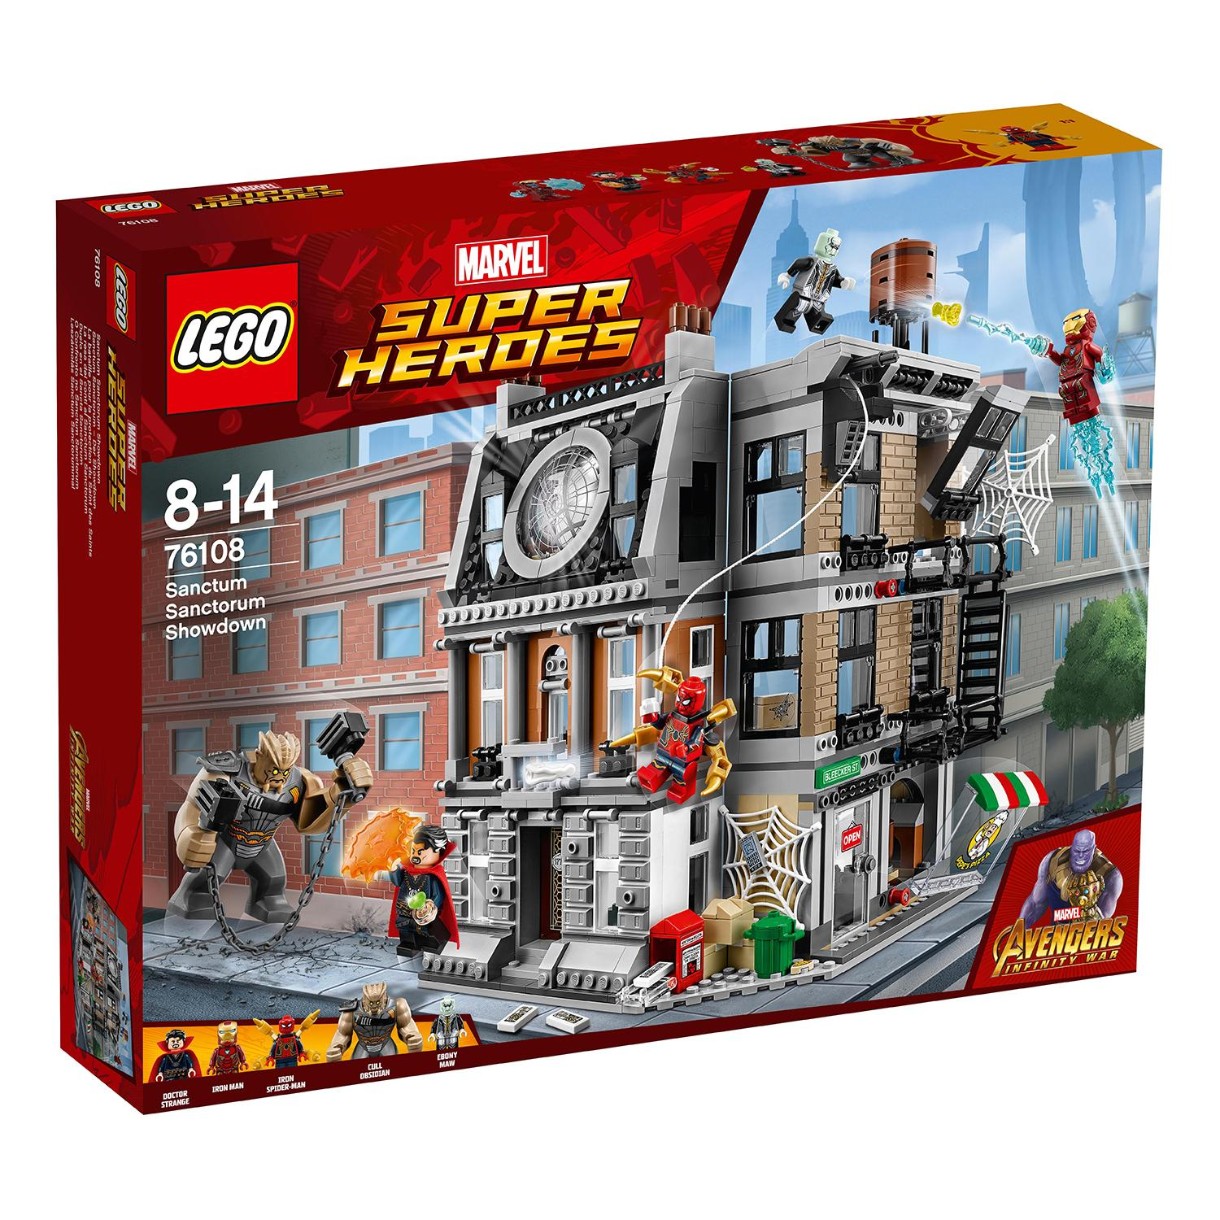 Set de construcție Lego Marvel: Sanctum Sanctorum Showdown (76108)